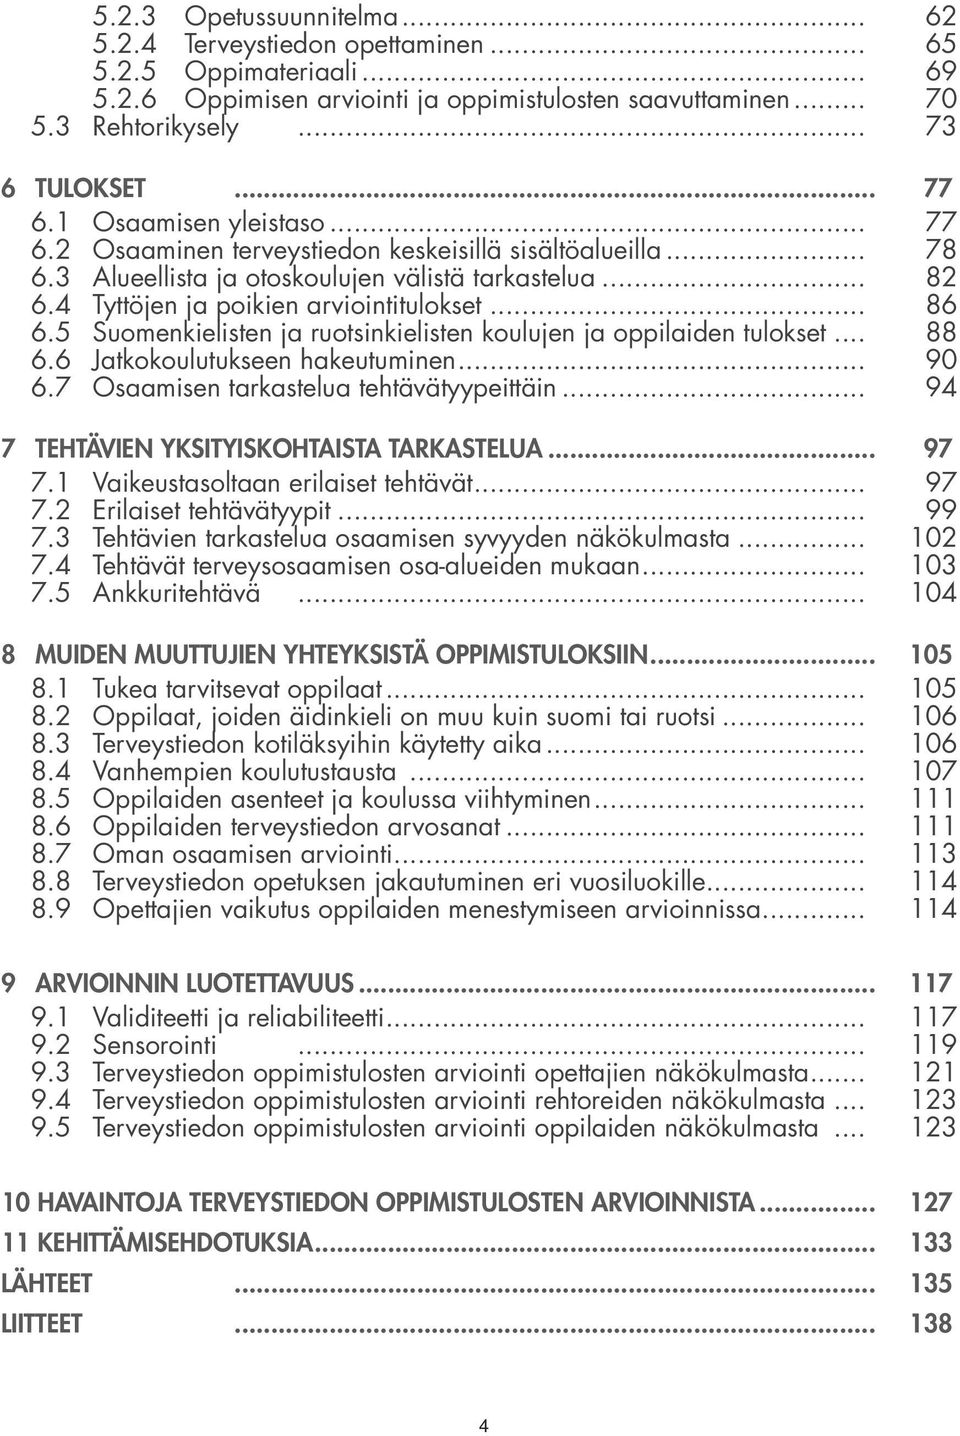 .. 86 6.5 Suomenkielisten ja ruotsinkielisten koulujen ja oppilaiden tulokset... 88 6.6 Jatkokoulutukseen hakeutuminen... 90 6.7 Osaamisen tarkastelua tehtävätyypeittäin.